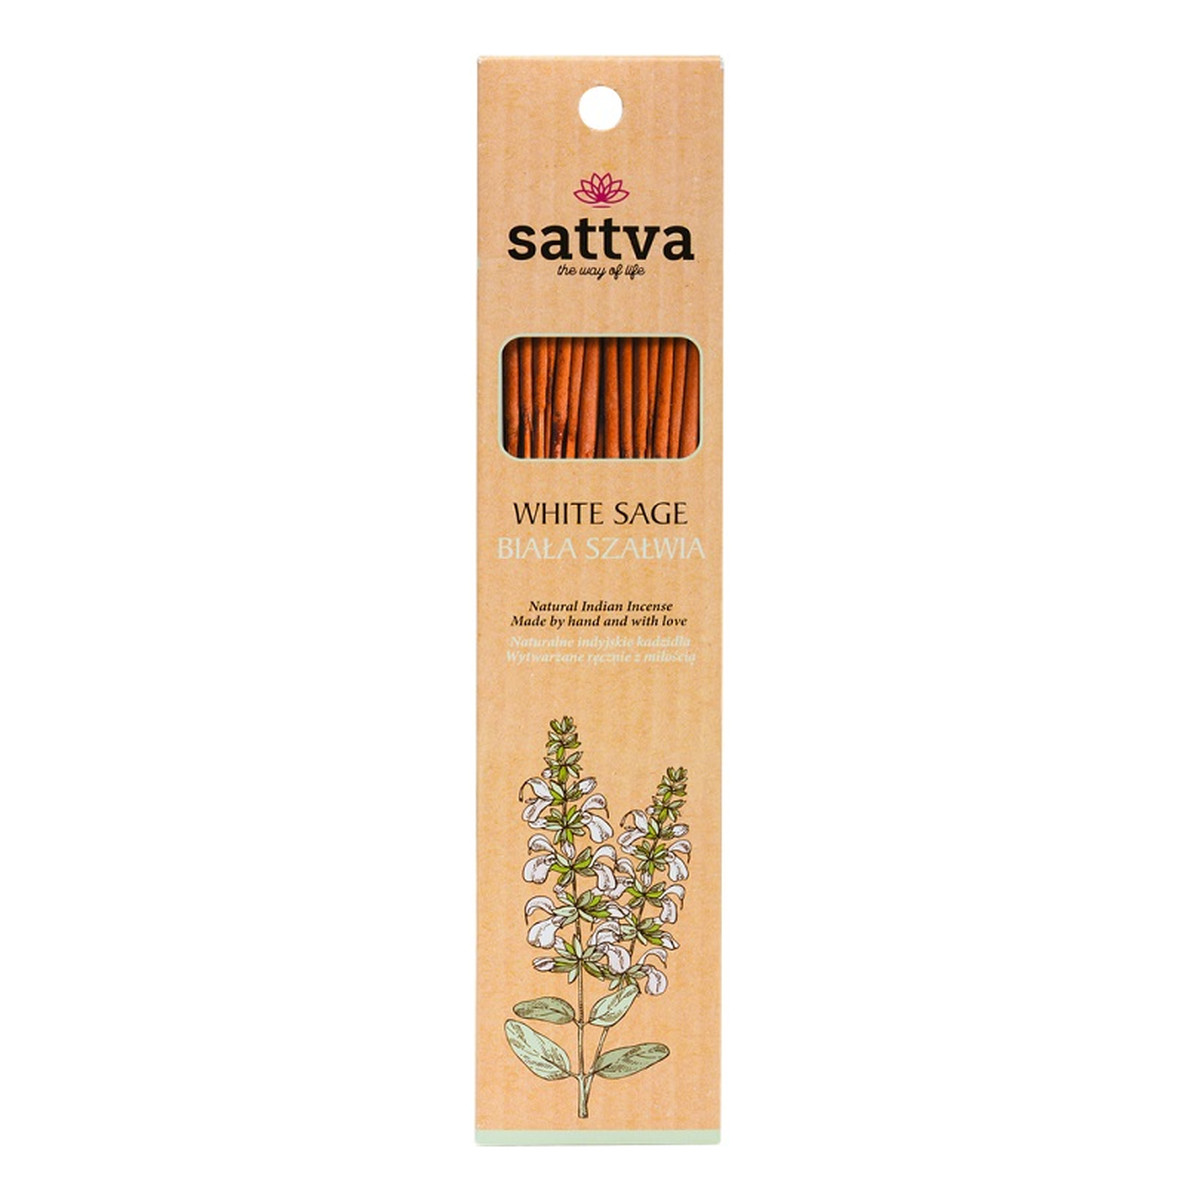 Sattva Natural Indian Incense Naturalne indyjskie kadzidełko White Sage - Biała Szałwia 15 szt.